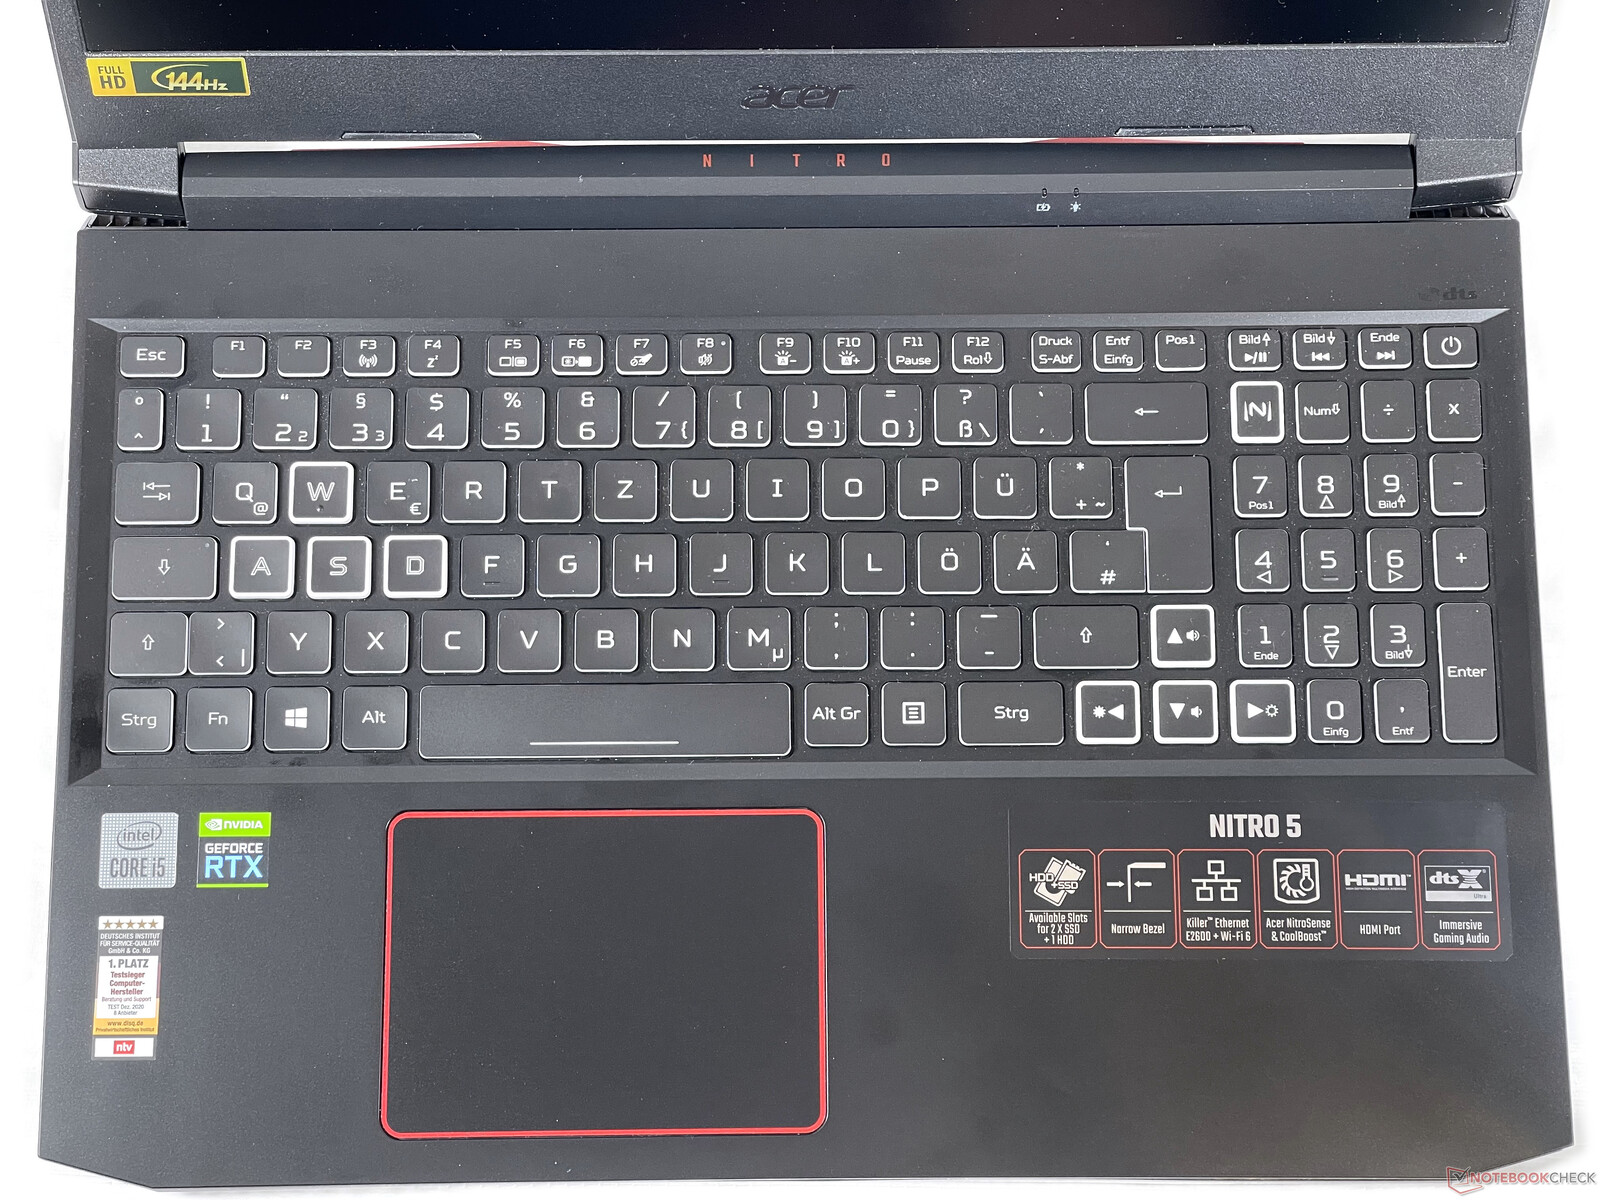 Acer Nitro 5 Ordinateur portable Gamer, AN515-55, Noir